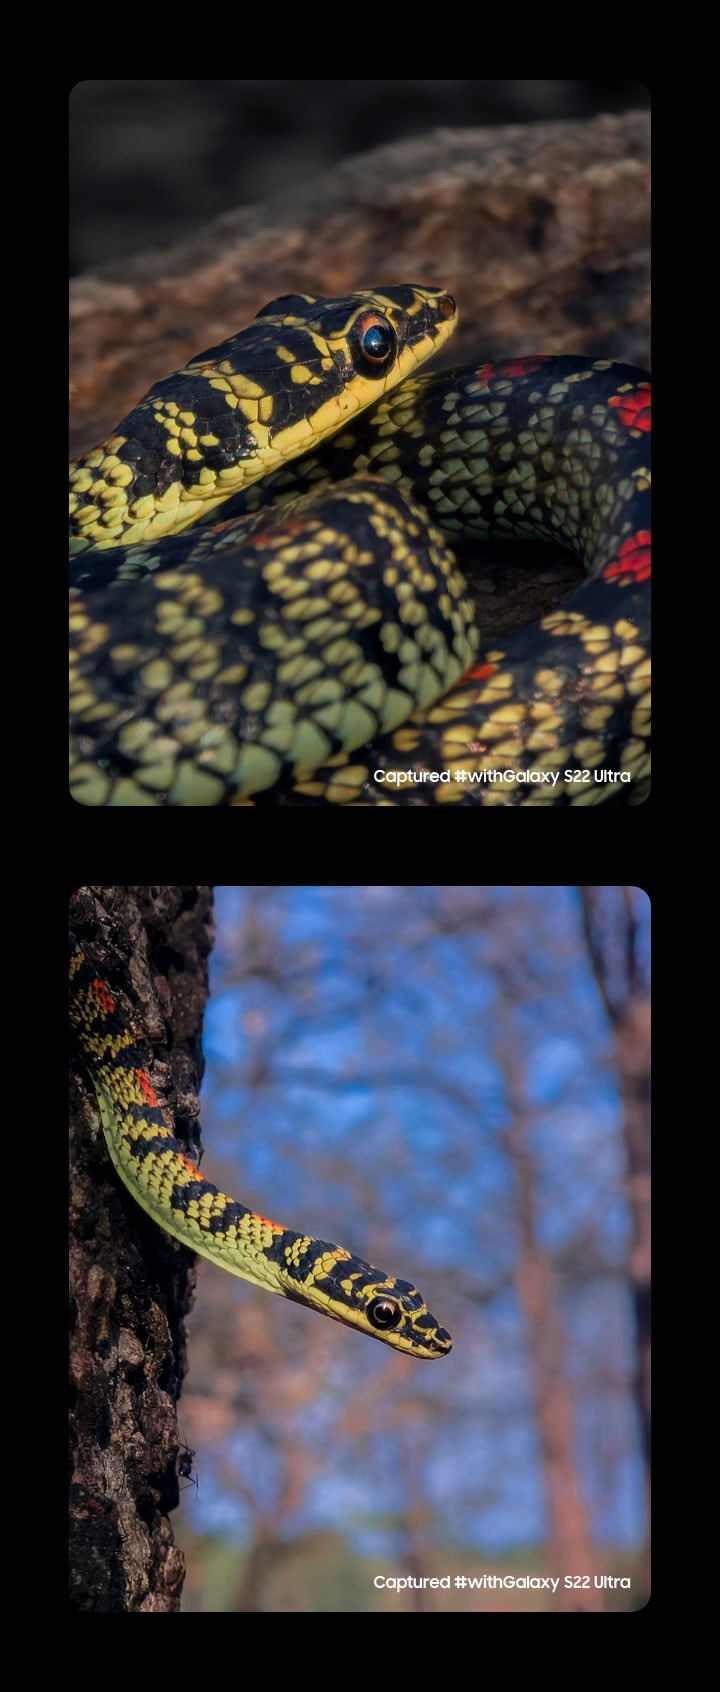 To snapshots side om side af en slange taget med Galaxy S22 Ultra. Taget #withGalaxy S22 Ultra